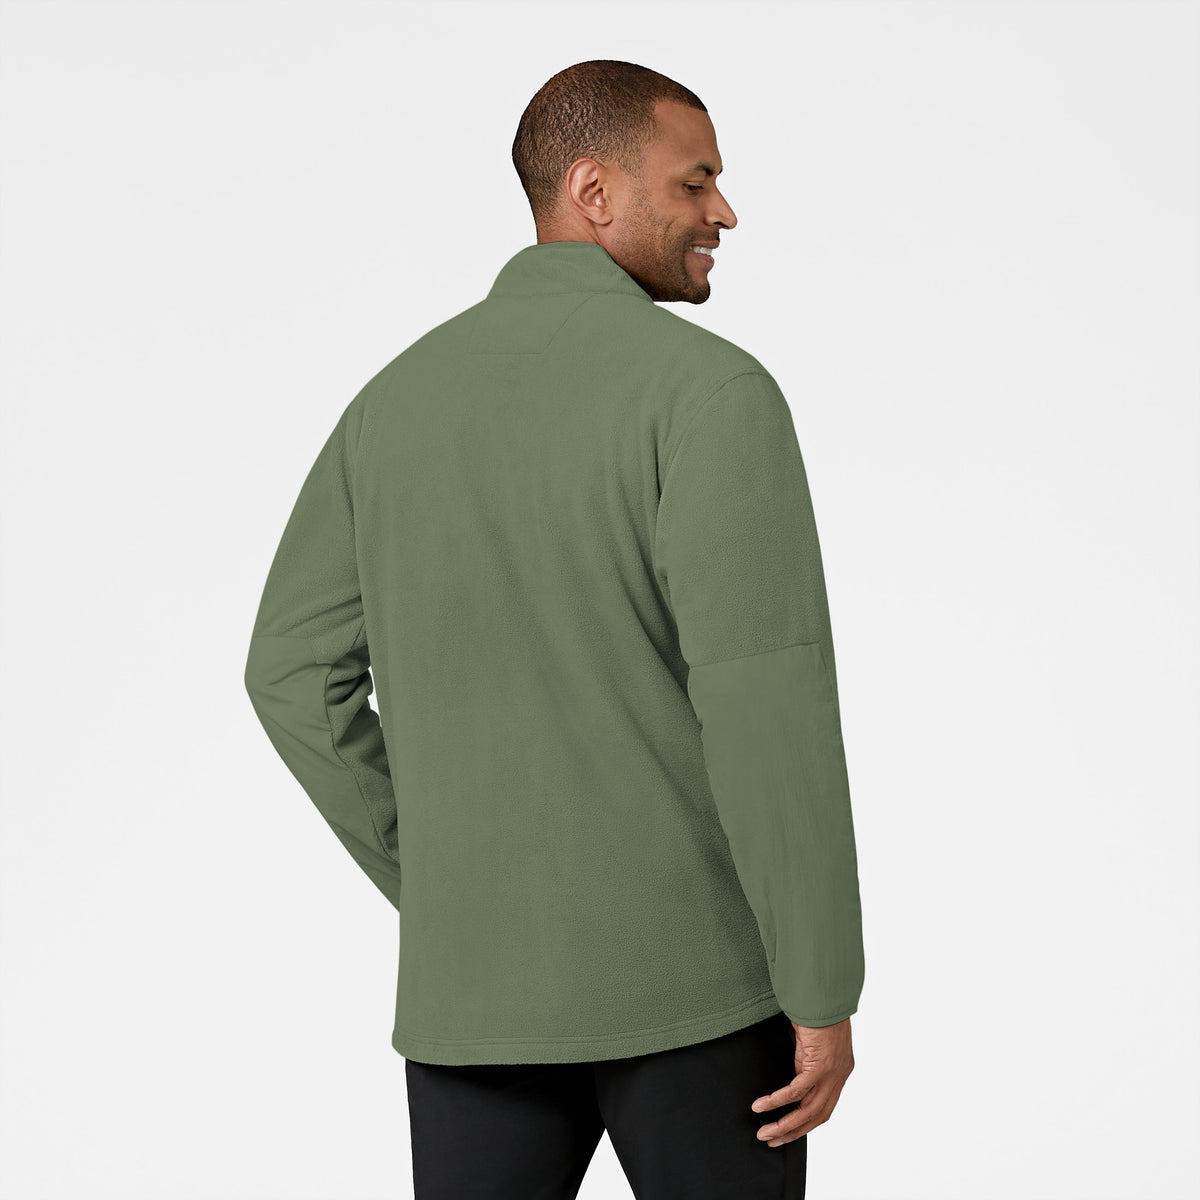 Slate Men's Micro Fleece Zip Jacket Olive back view